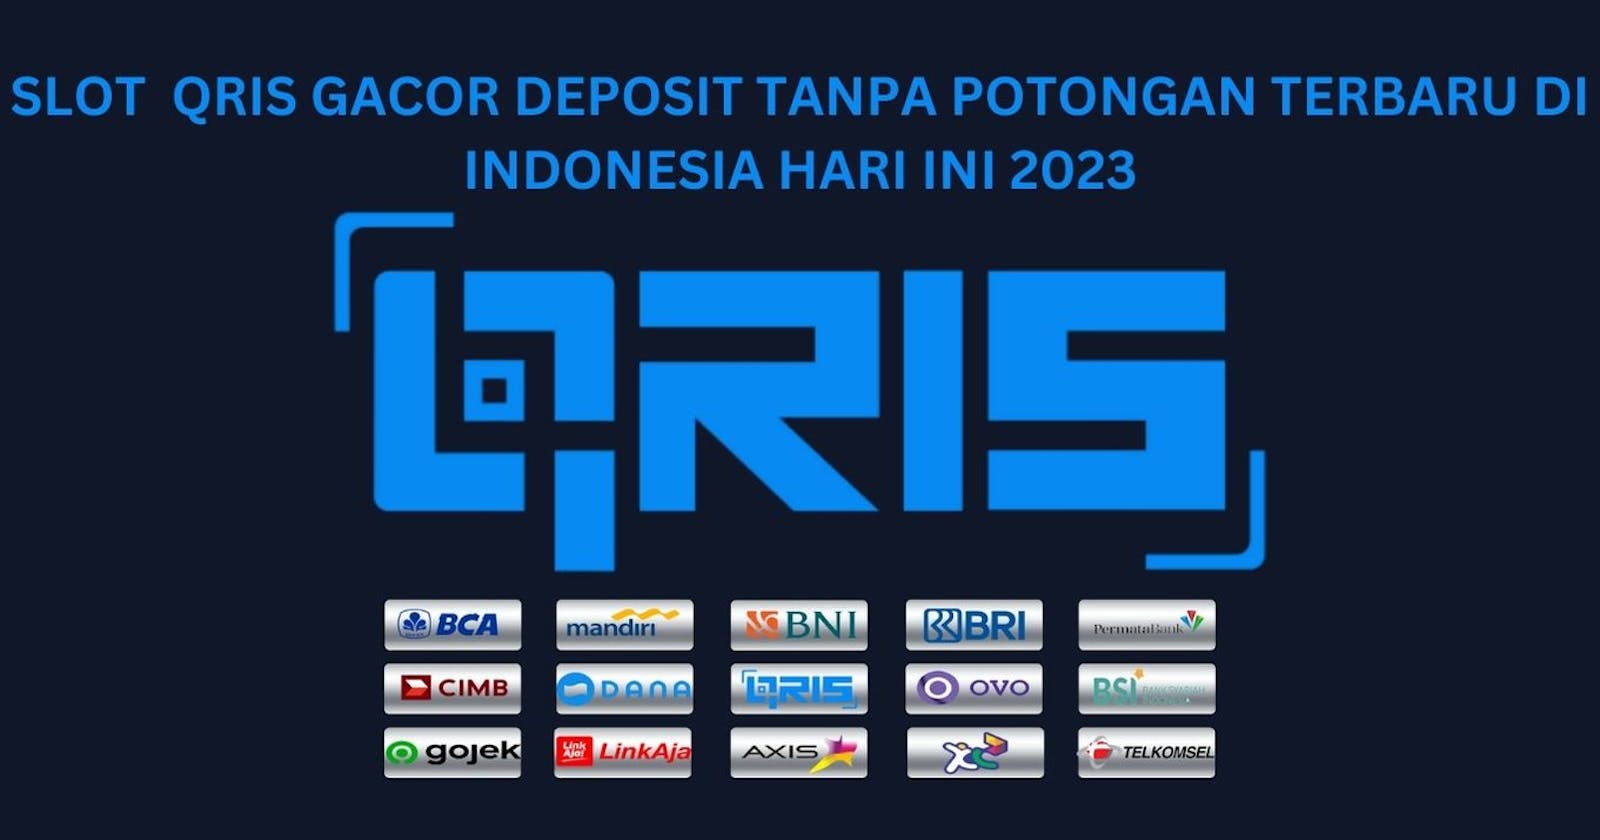 Slot Qris Gacor Deposit Tanpa Potongan Terbaru Di Indonesia Hari Ini 2023